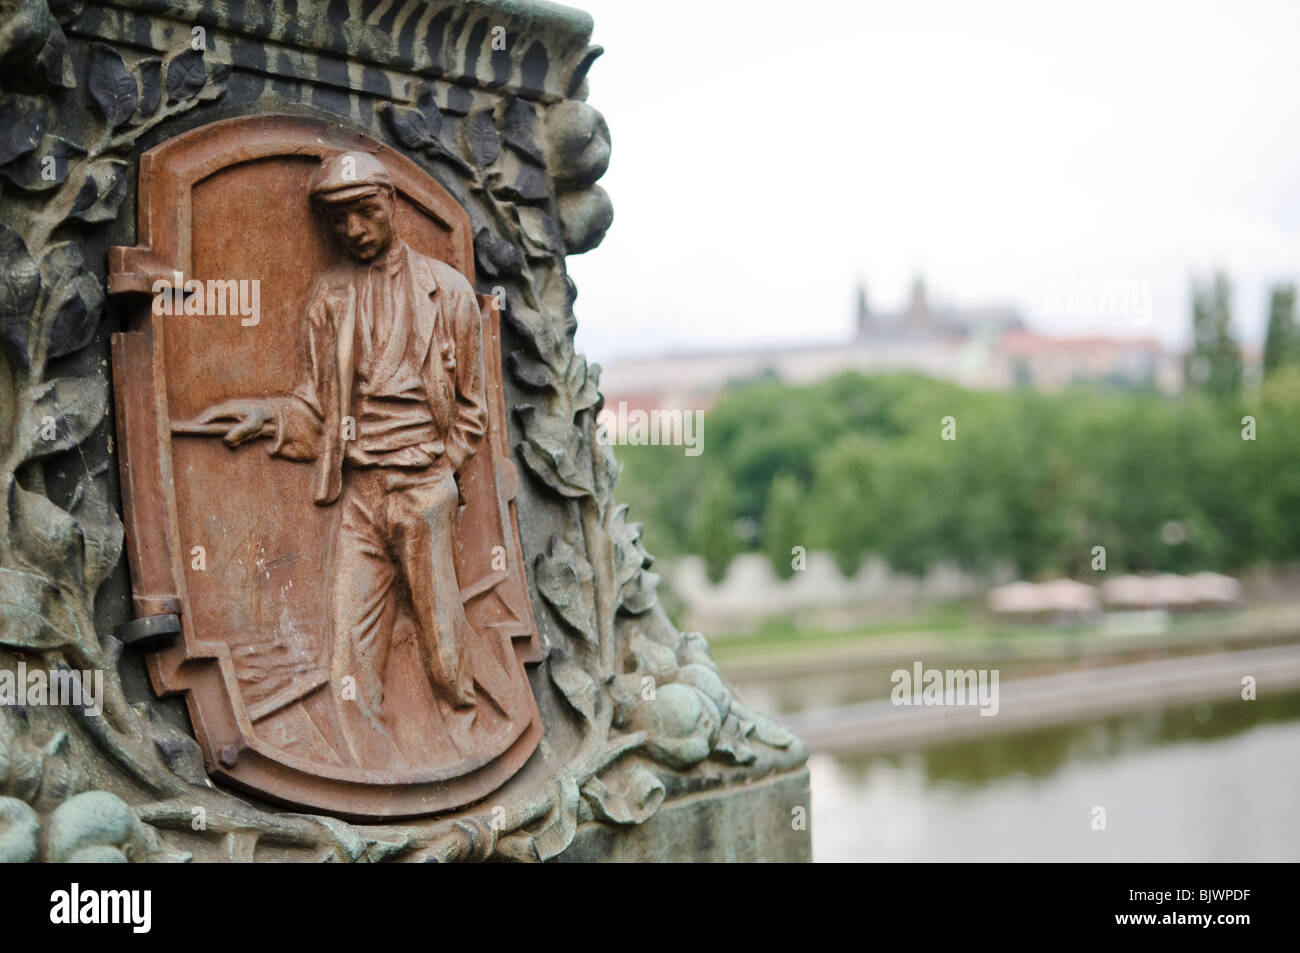 PRAGUE, République tchèque - plaque communiste d'un travailleur sur un pont de Prague avec le Château de Prague dans la distance Banque D'Images